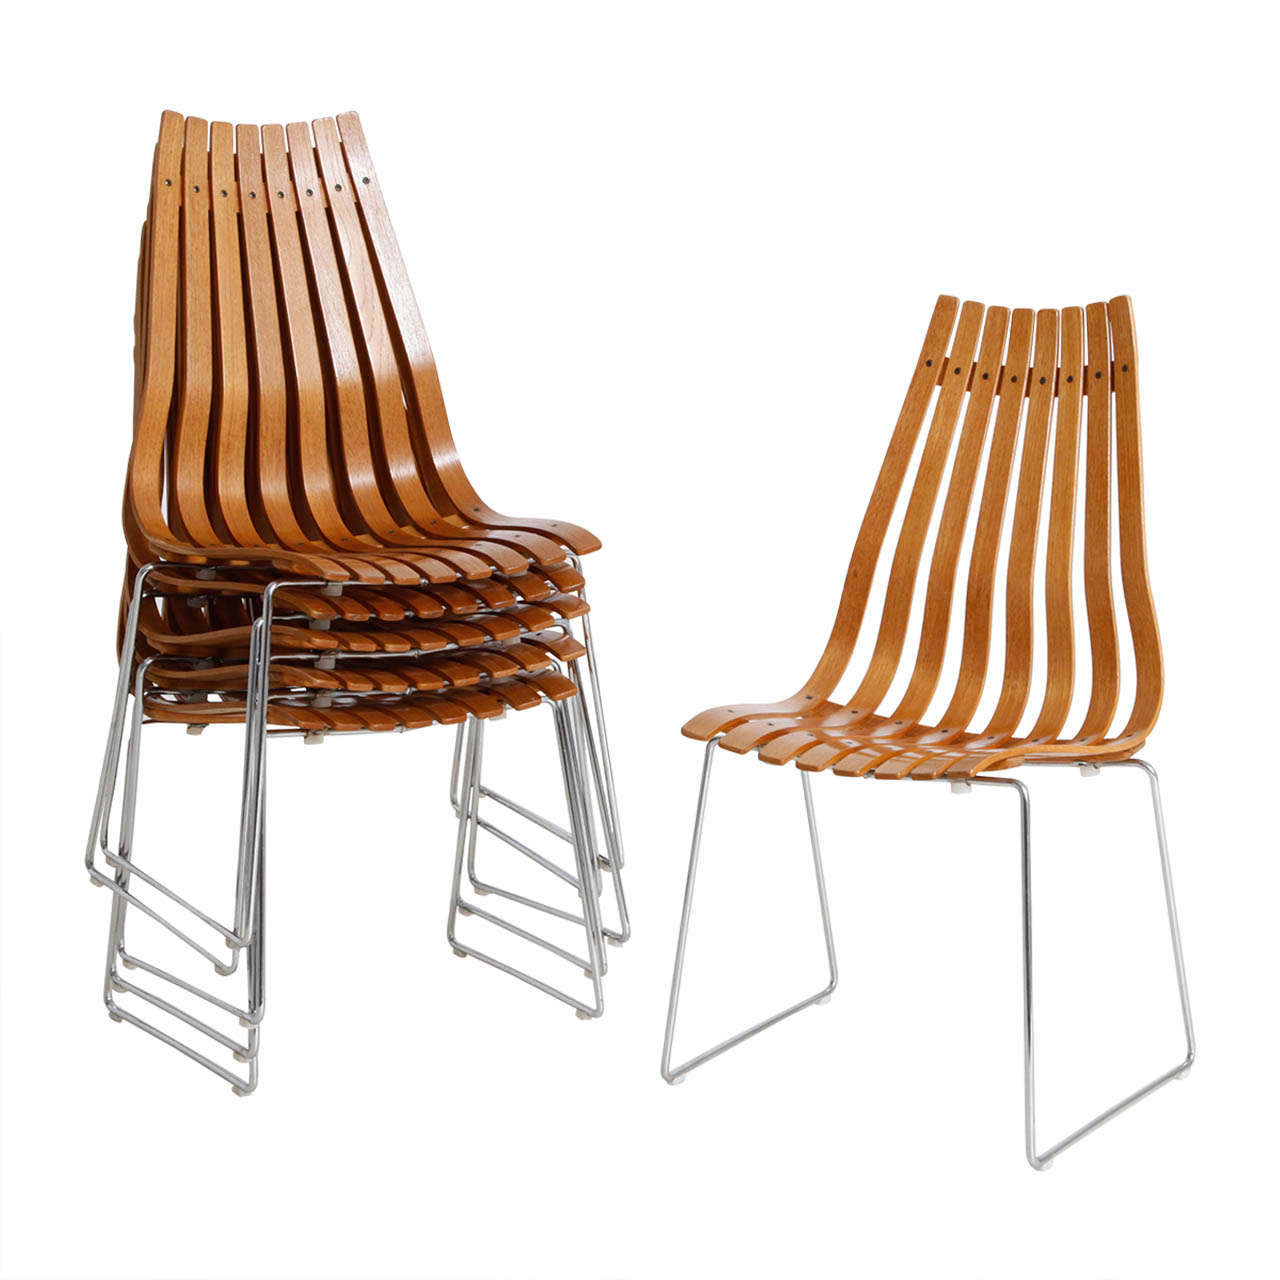 Hans Brattrud chairs